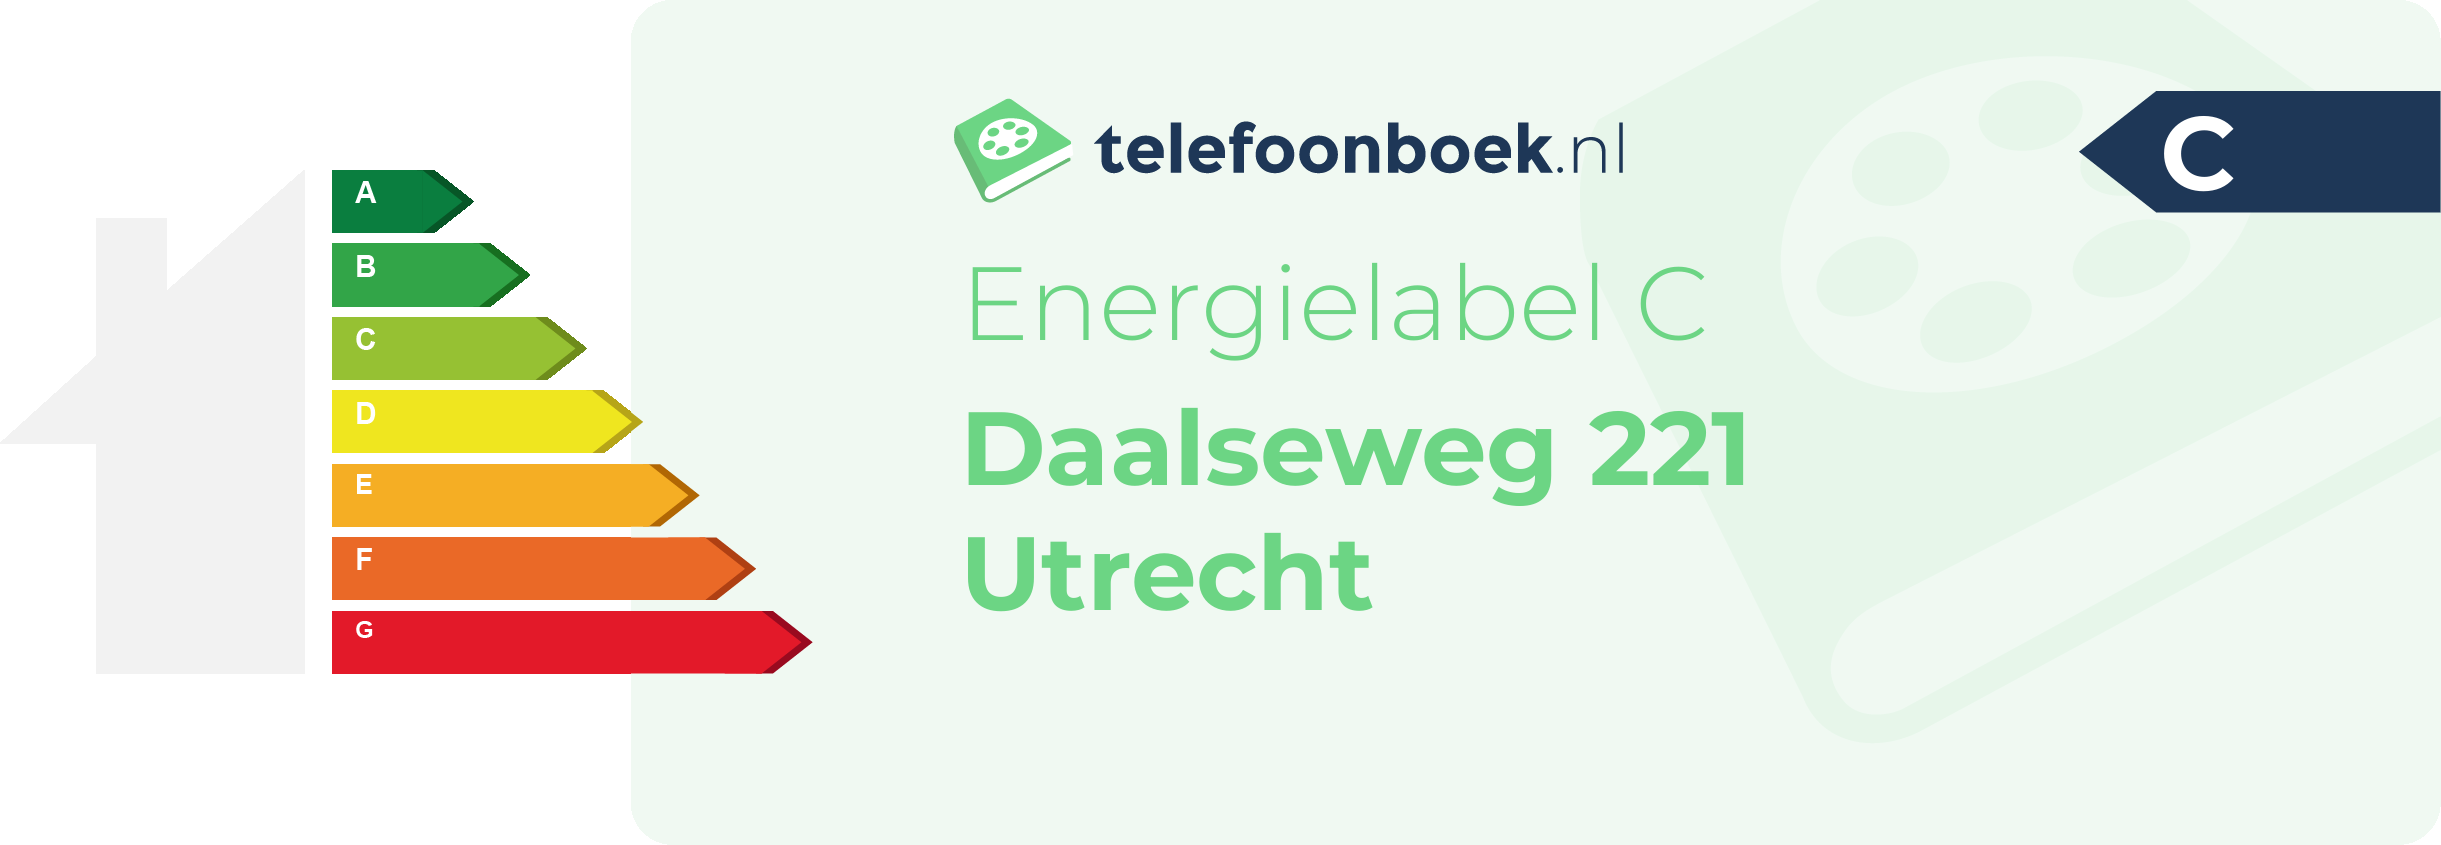 Energielabel Daalseweg 221 Utrecht